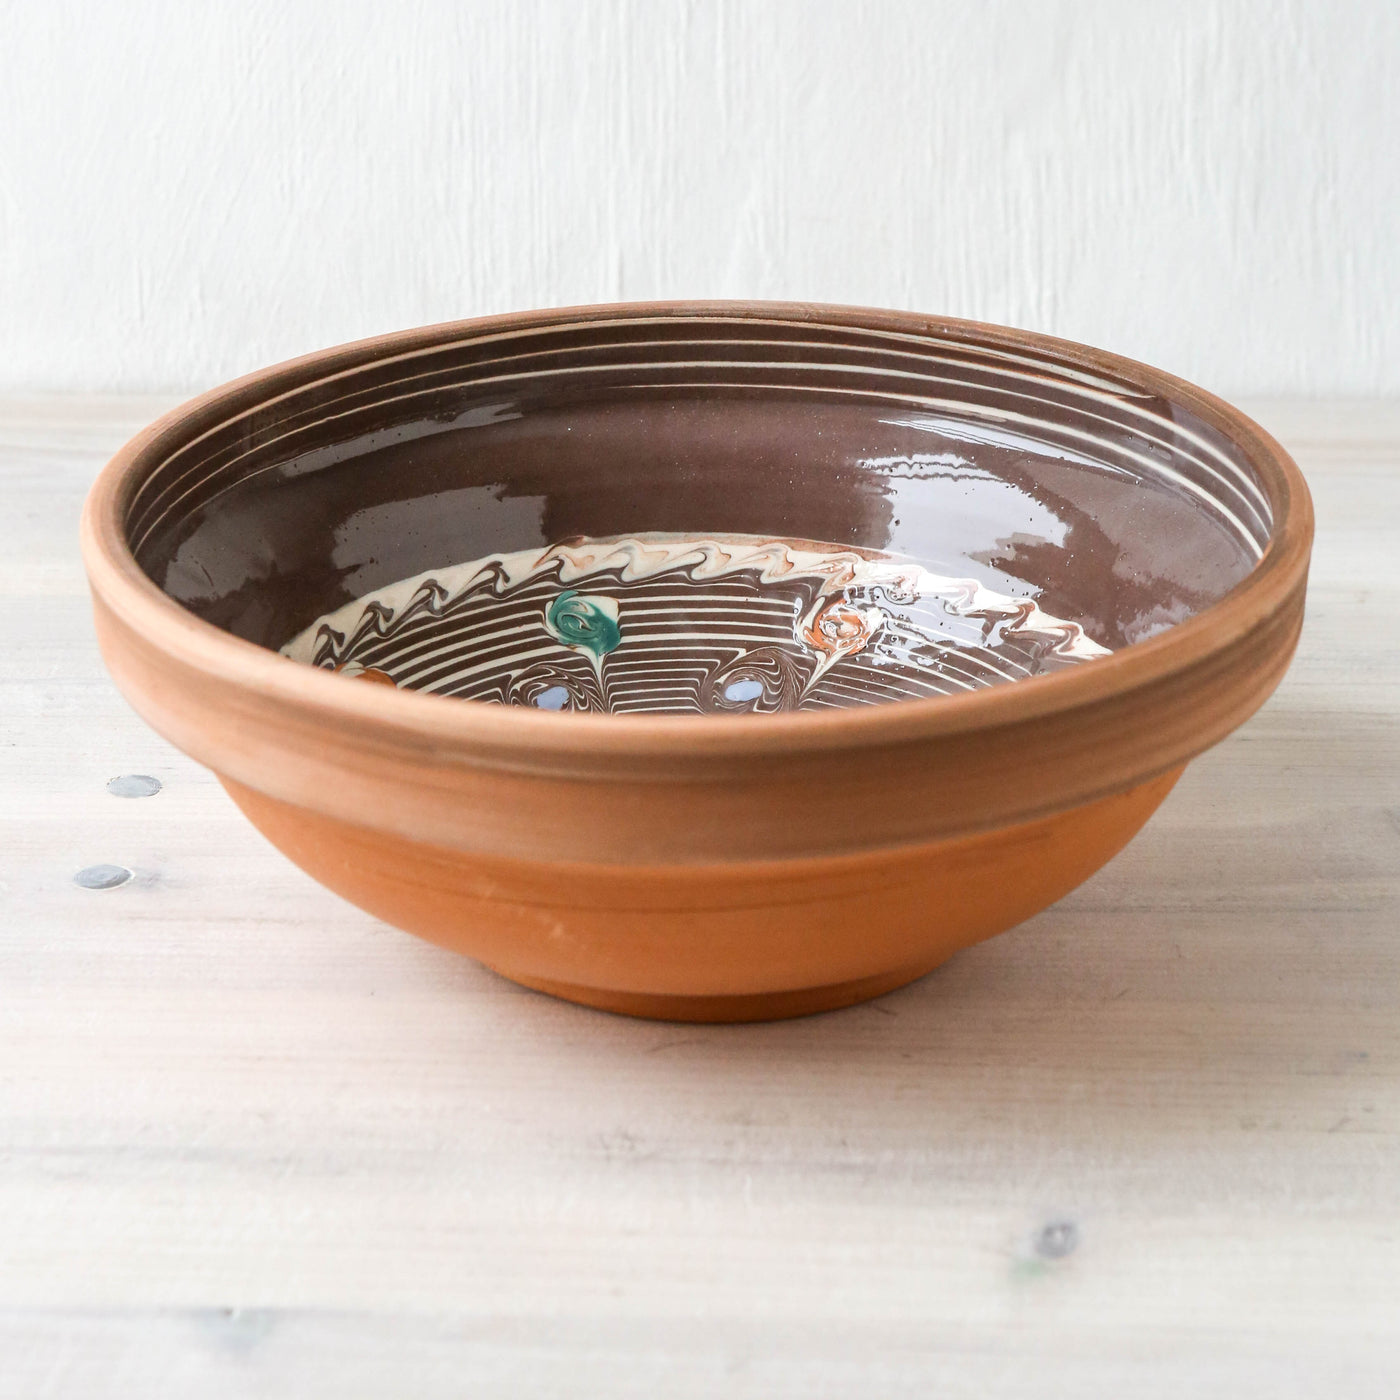 24cm Horezu Stoneware Serving Bowl - Turquoise & Orange